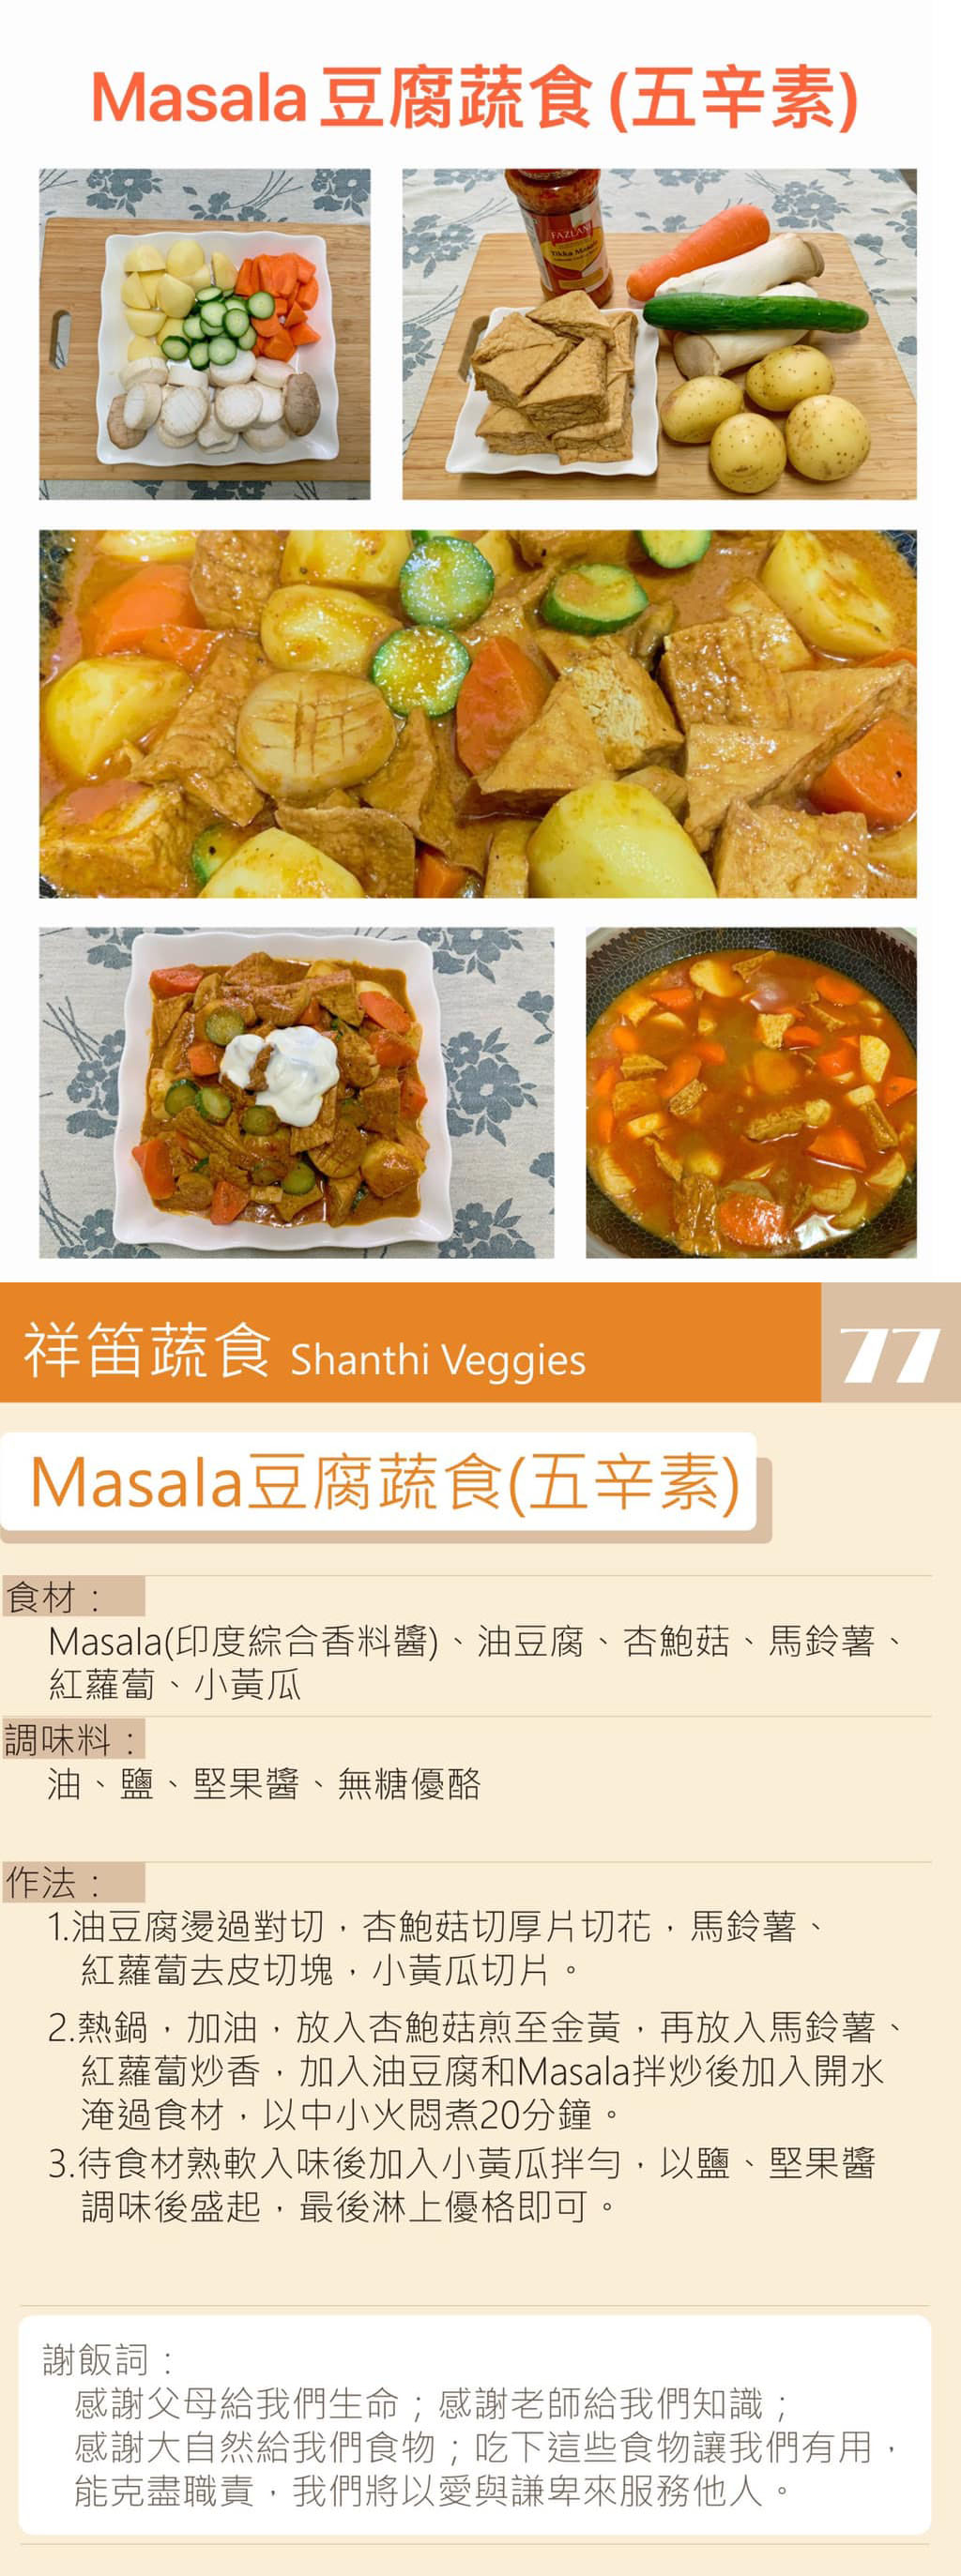 Masala豆腐蔬食-五辛素